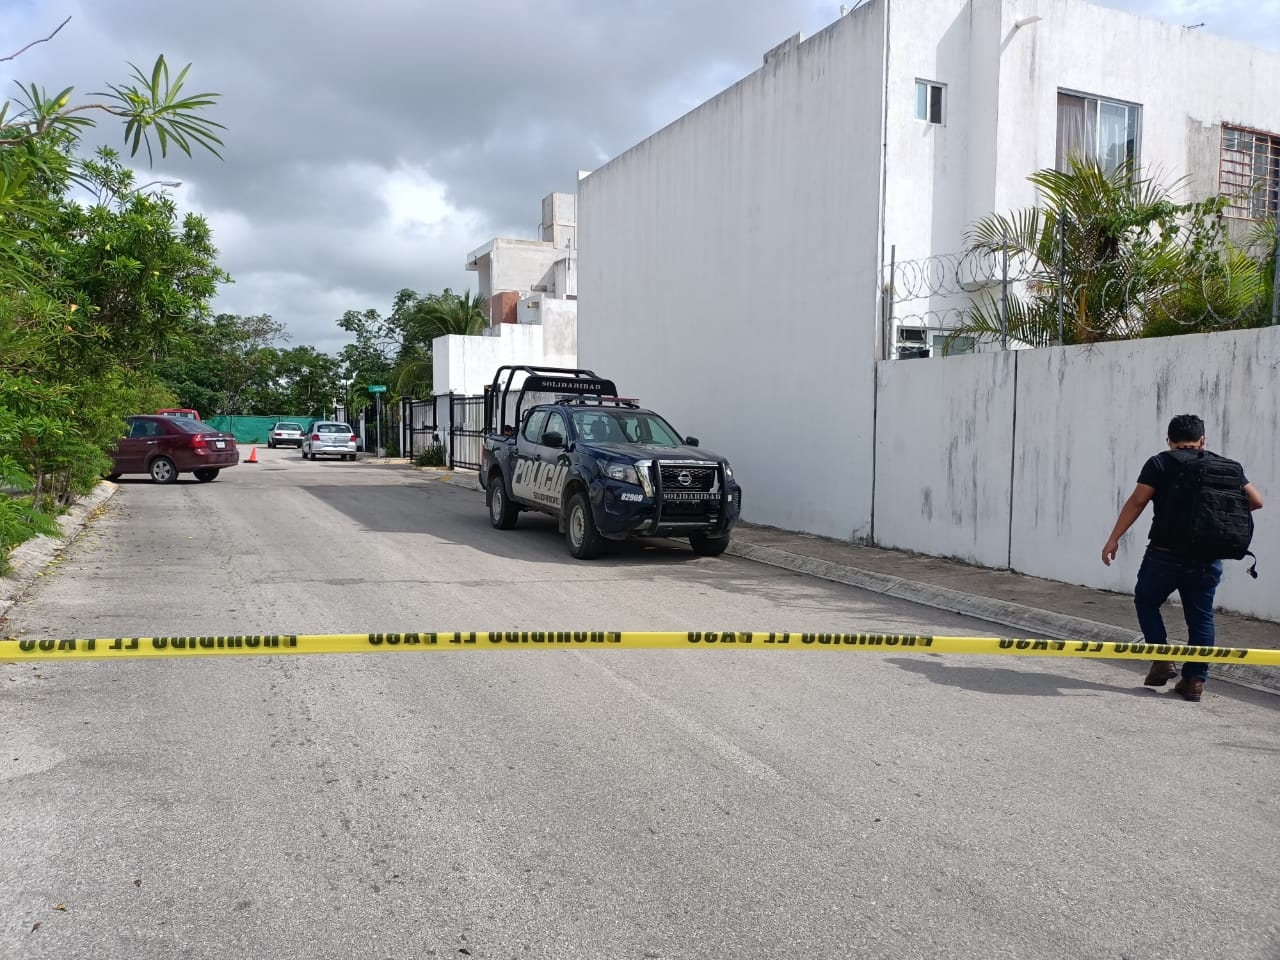 La Policía de Playa del Carmen acordonó la zona del ataque armado para las investigaciones correspondientes